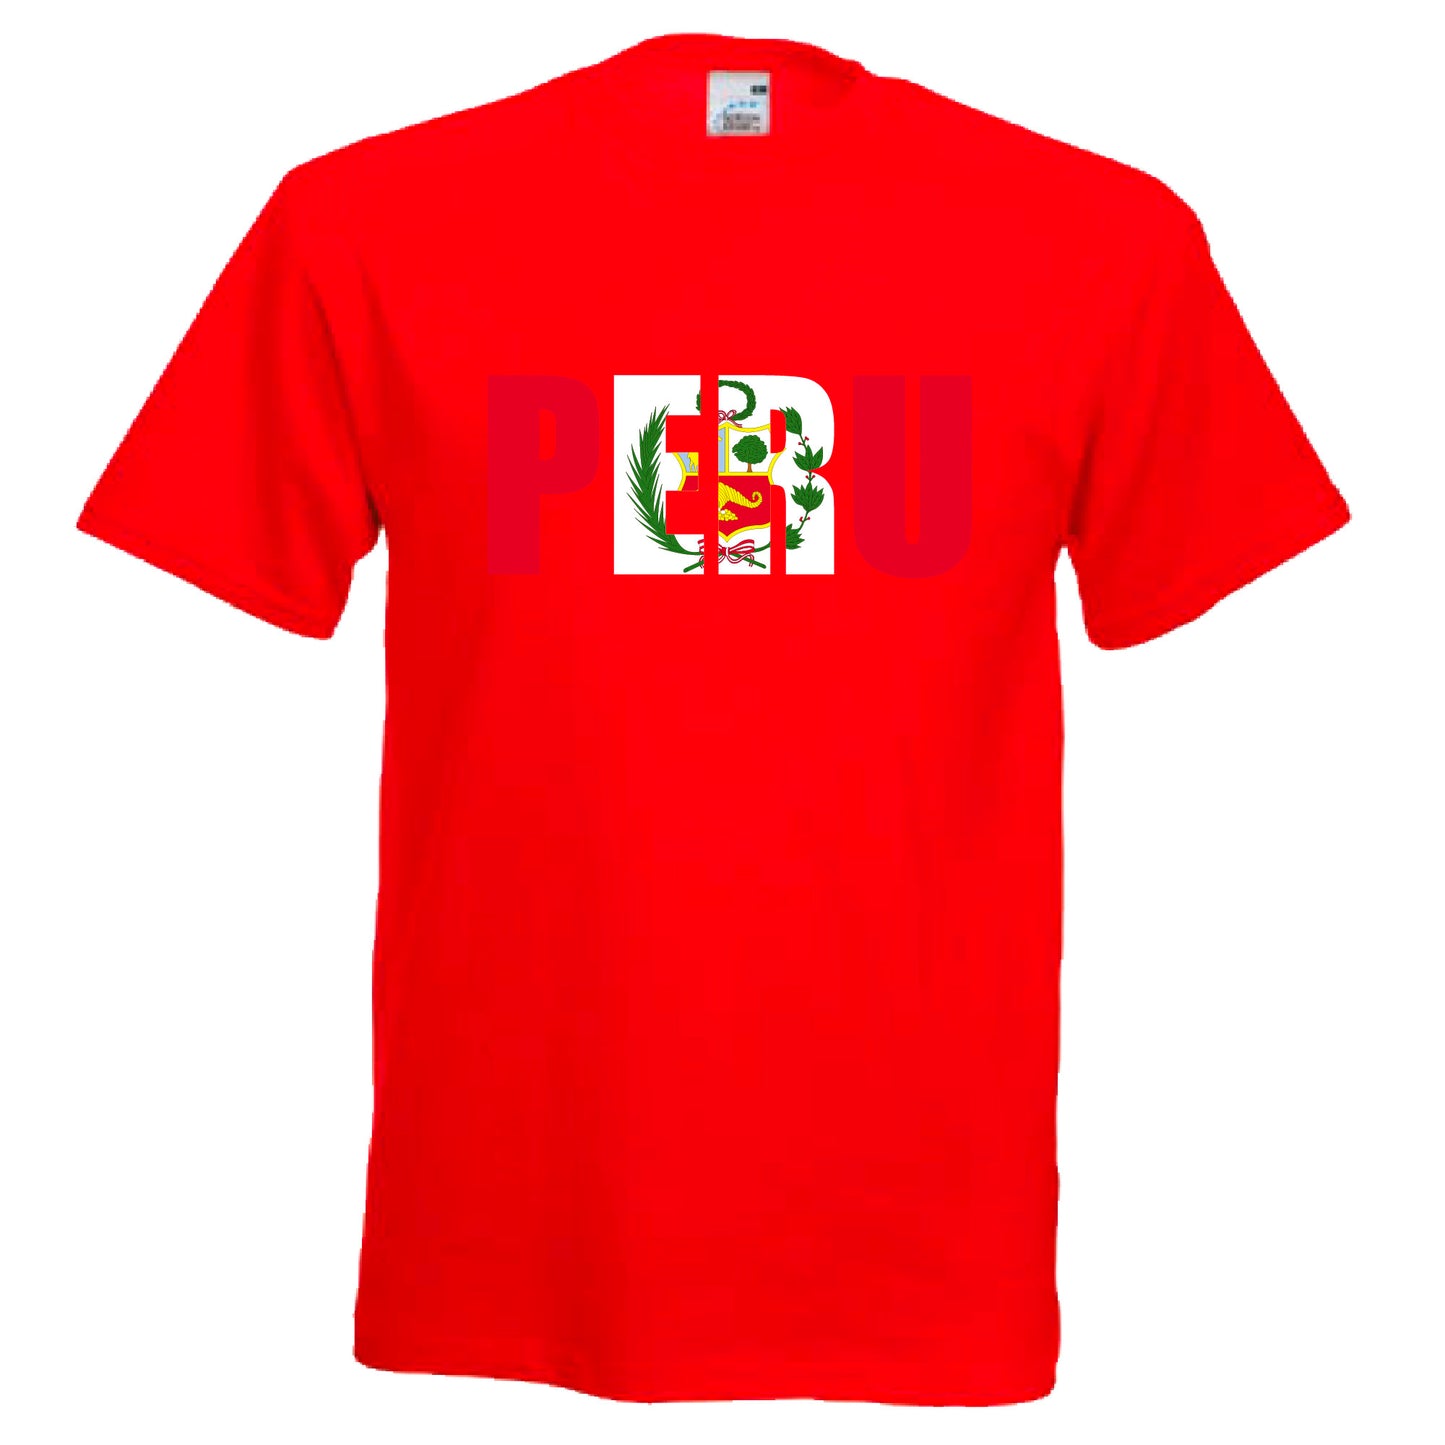 INDIGOS UG - T-Shirt Herren - Peru - Schriftzug - Fussball